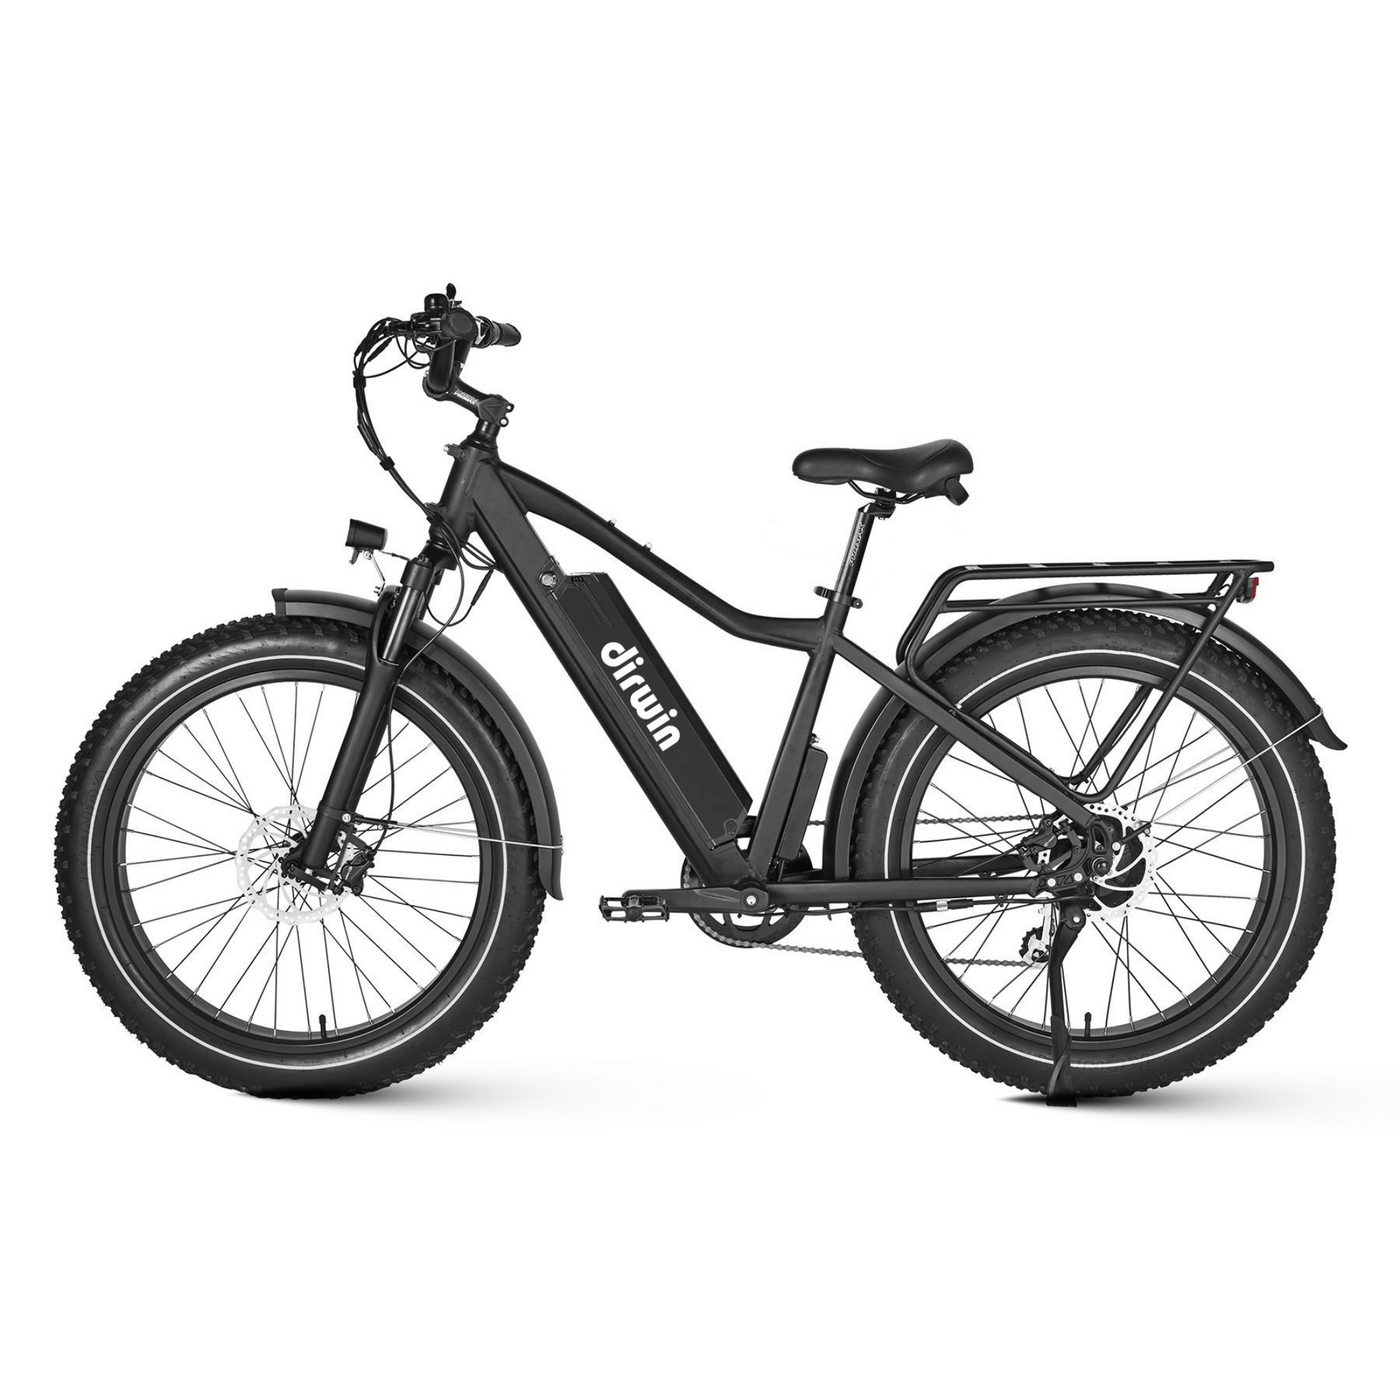 Dirwin Seeker All-Terrain Electric Bicycle